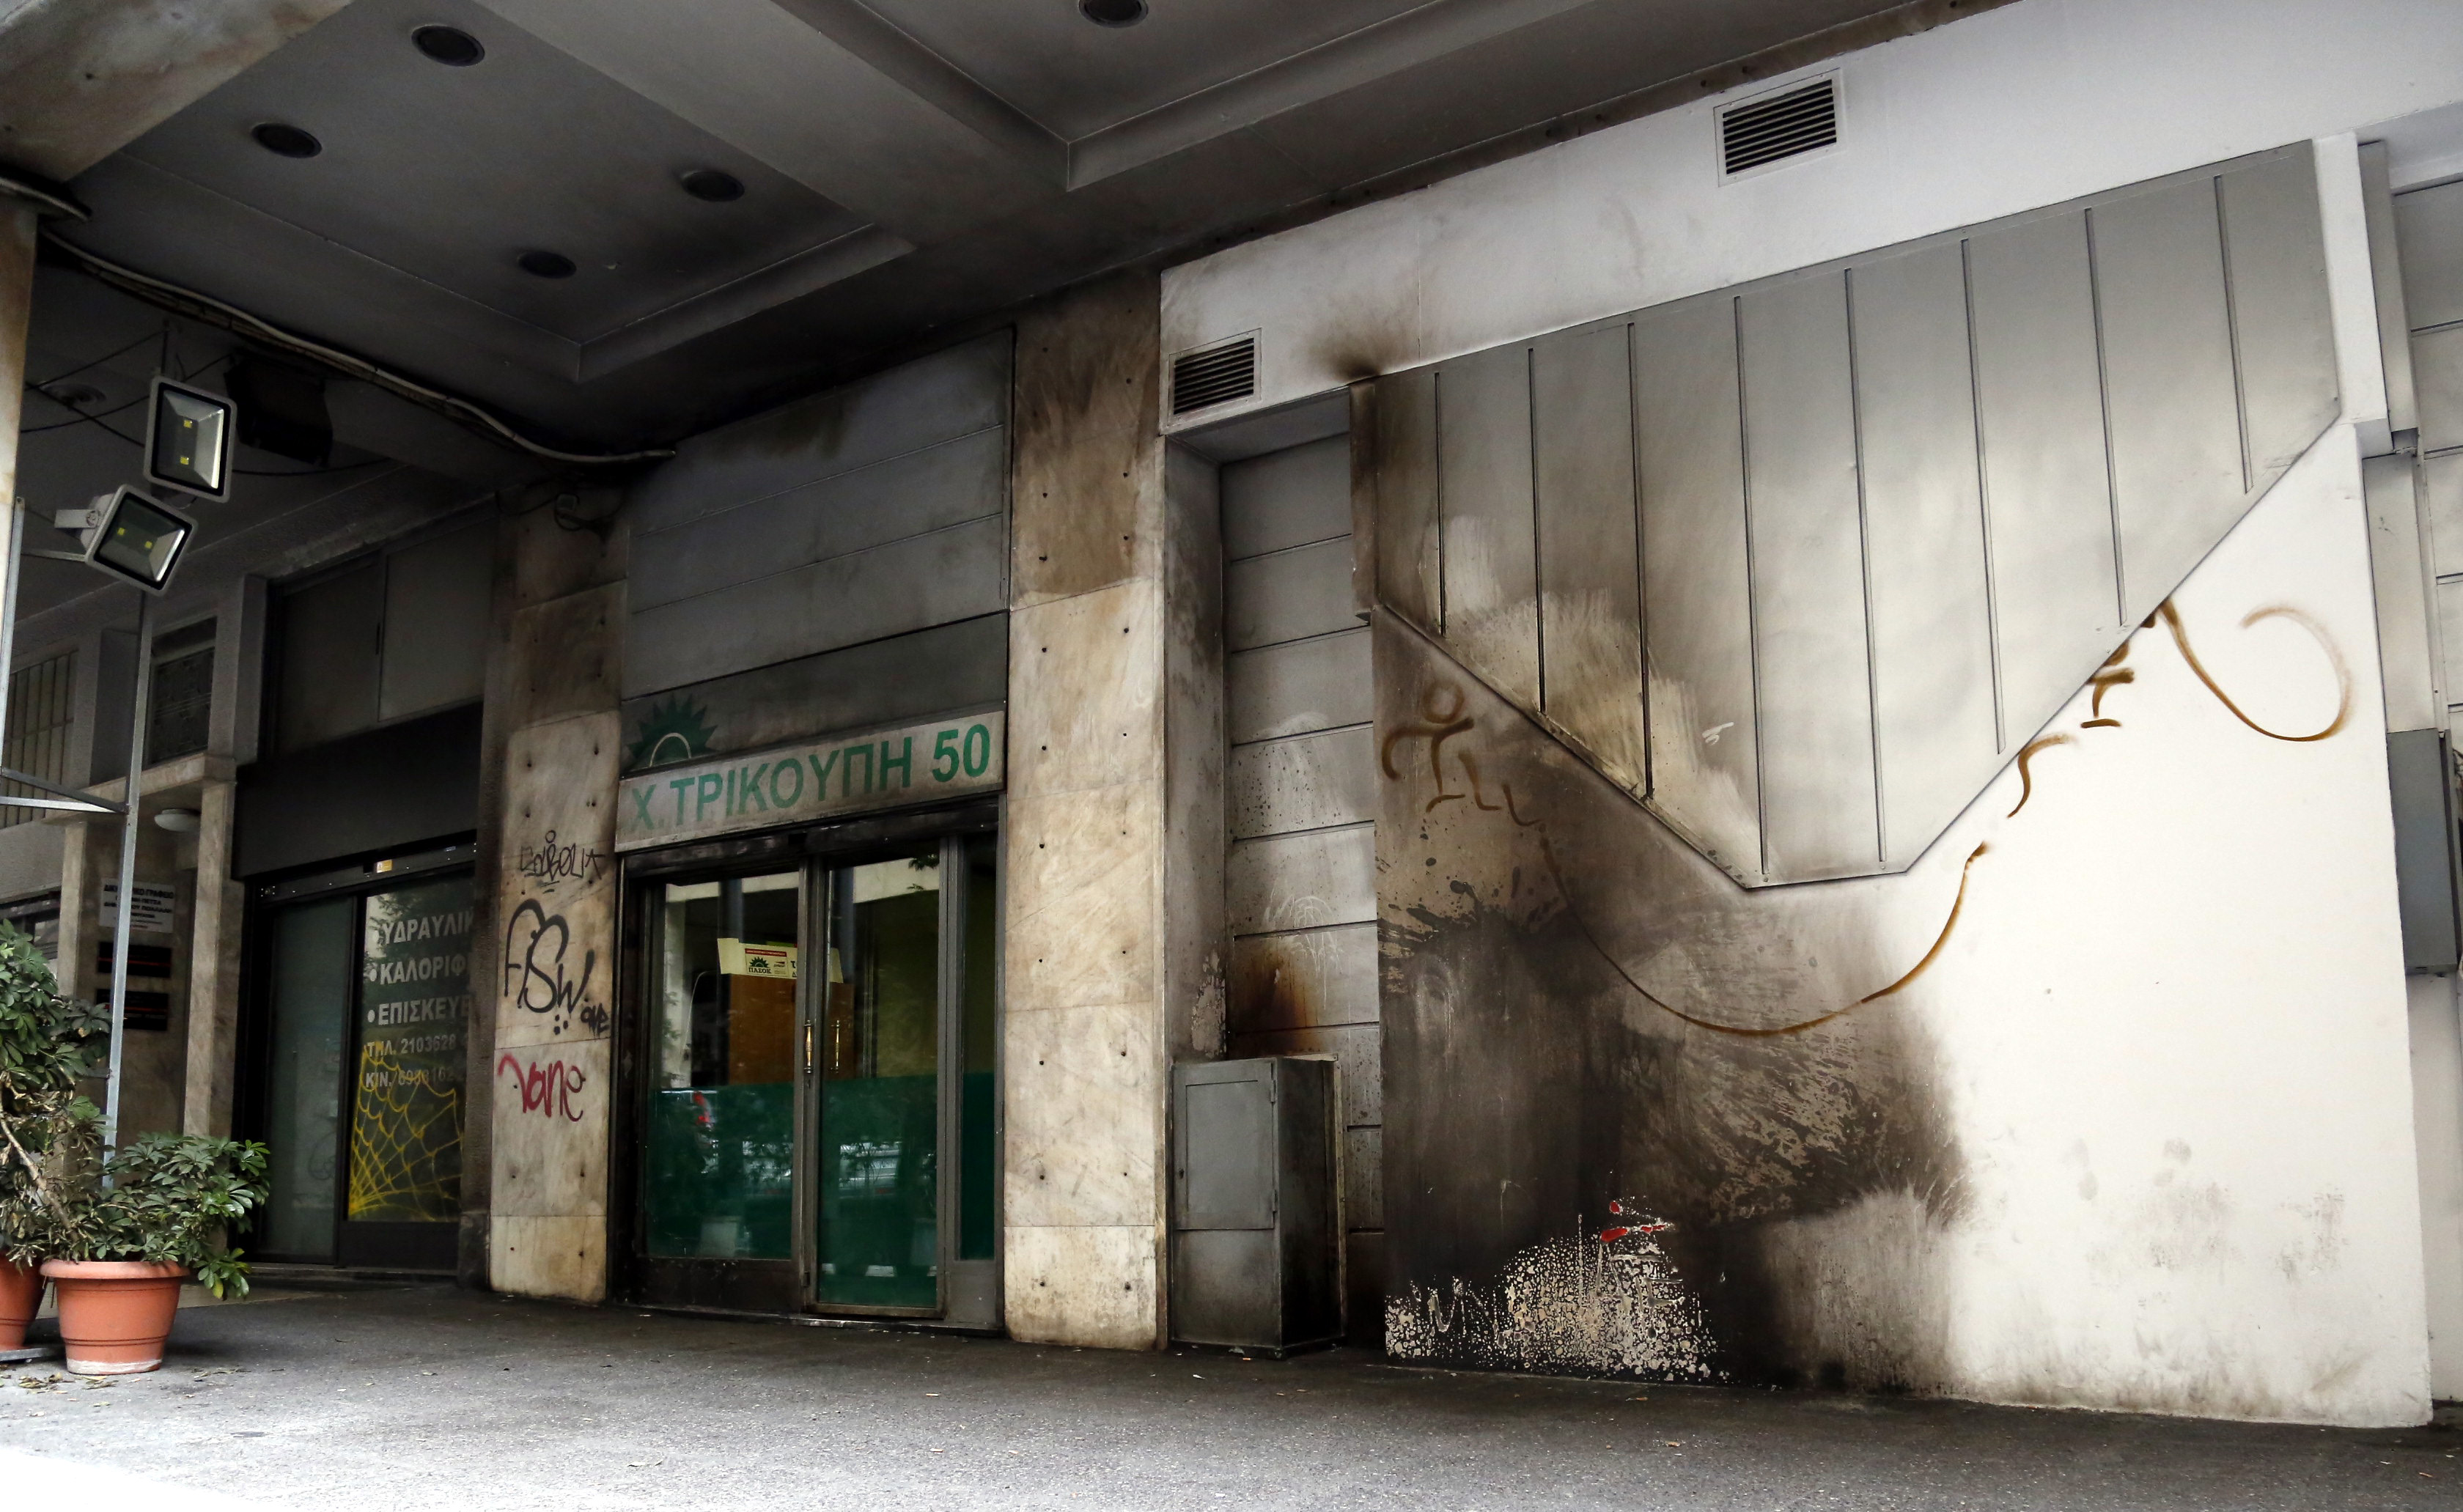 Επιθέσεις με μολότοφ στο κέντρο της Αθήνας | tovima.gr